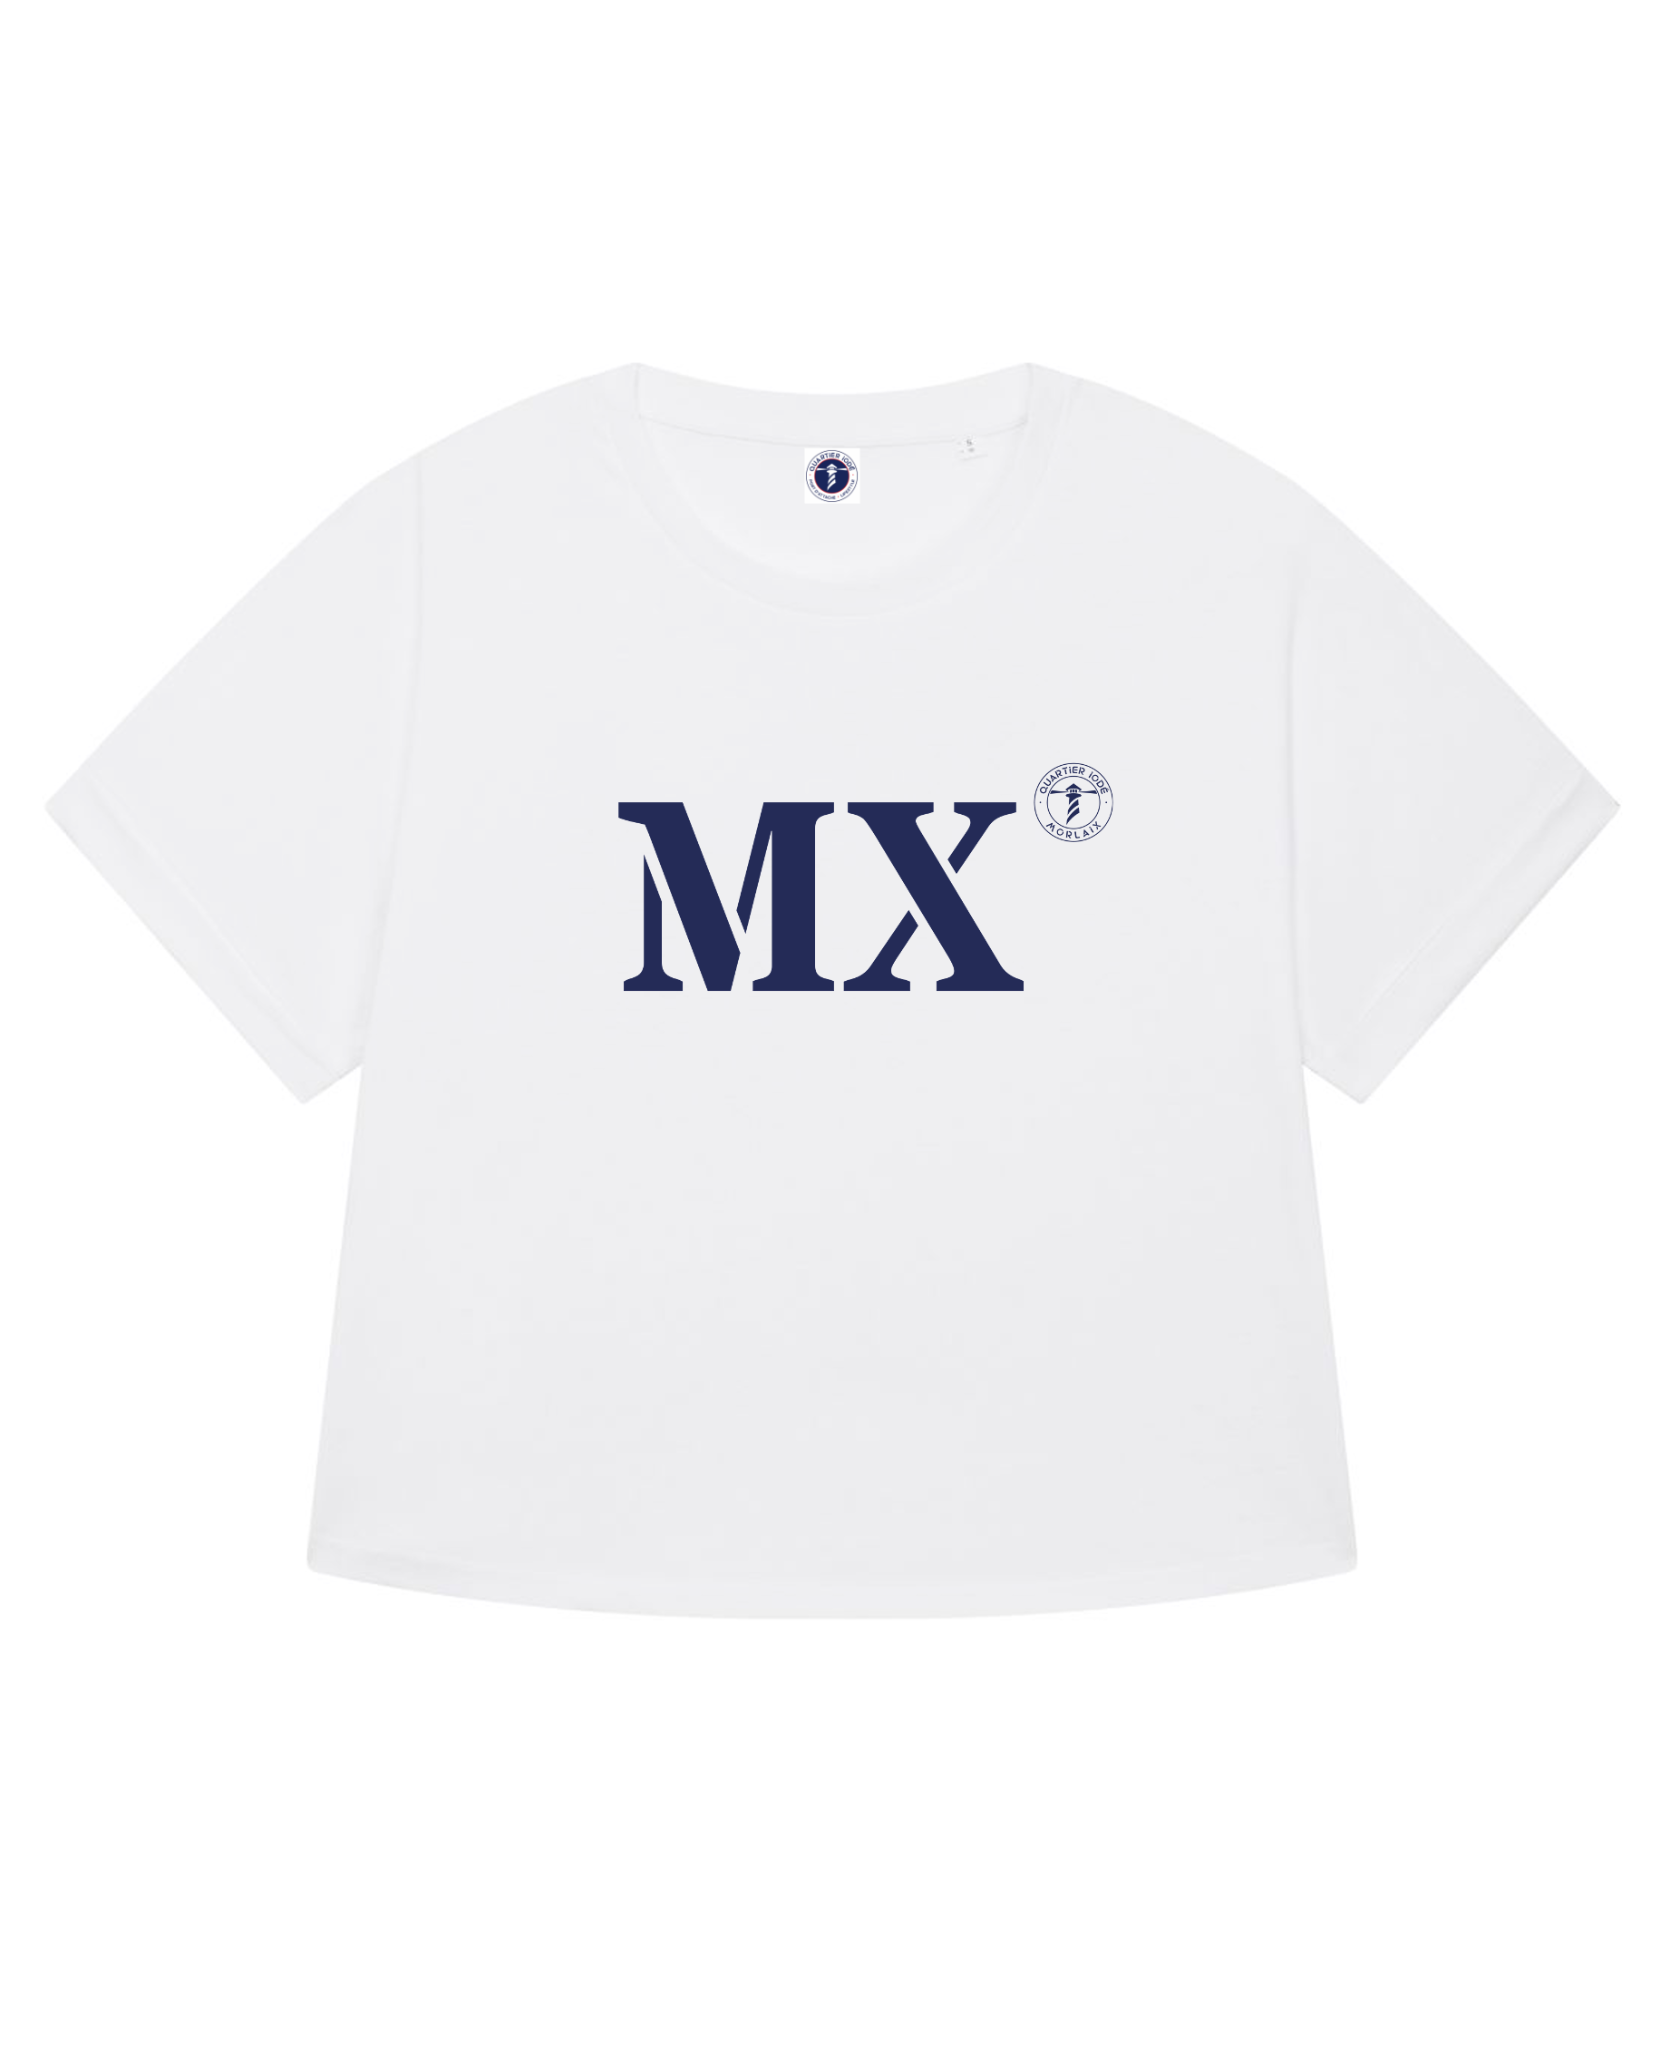 T-shirt blanc large pour femme, MX pour Morlaix, marque Quartier Iodé.